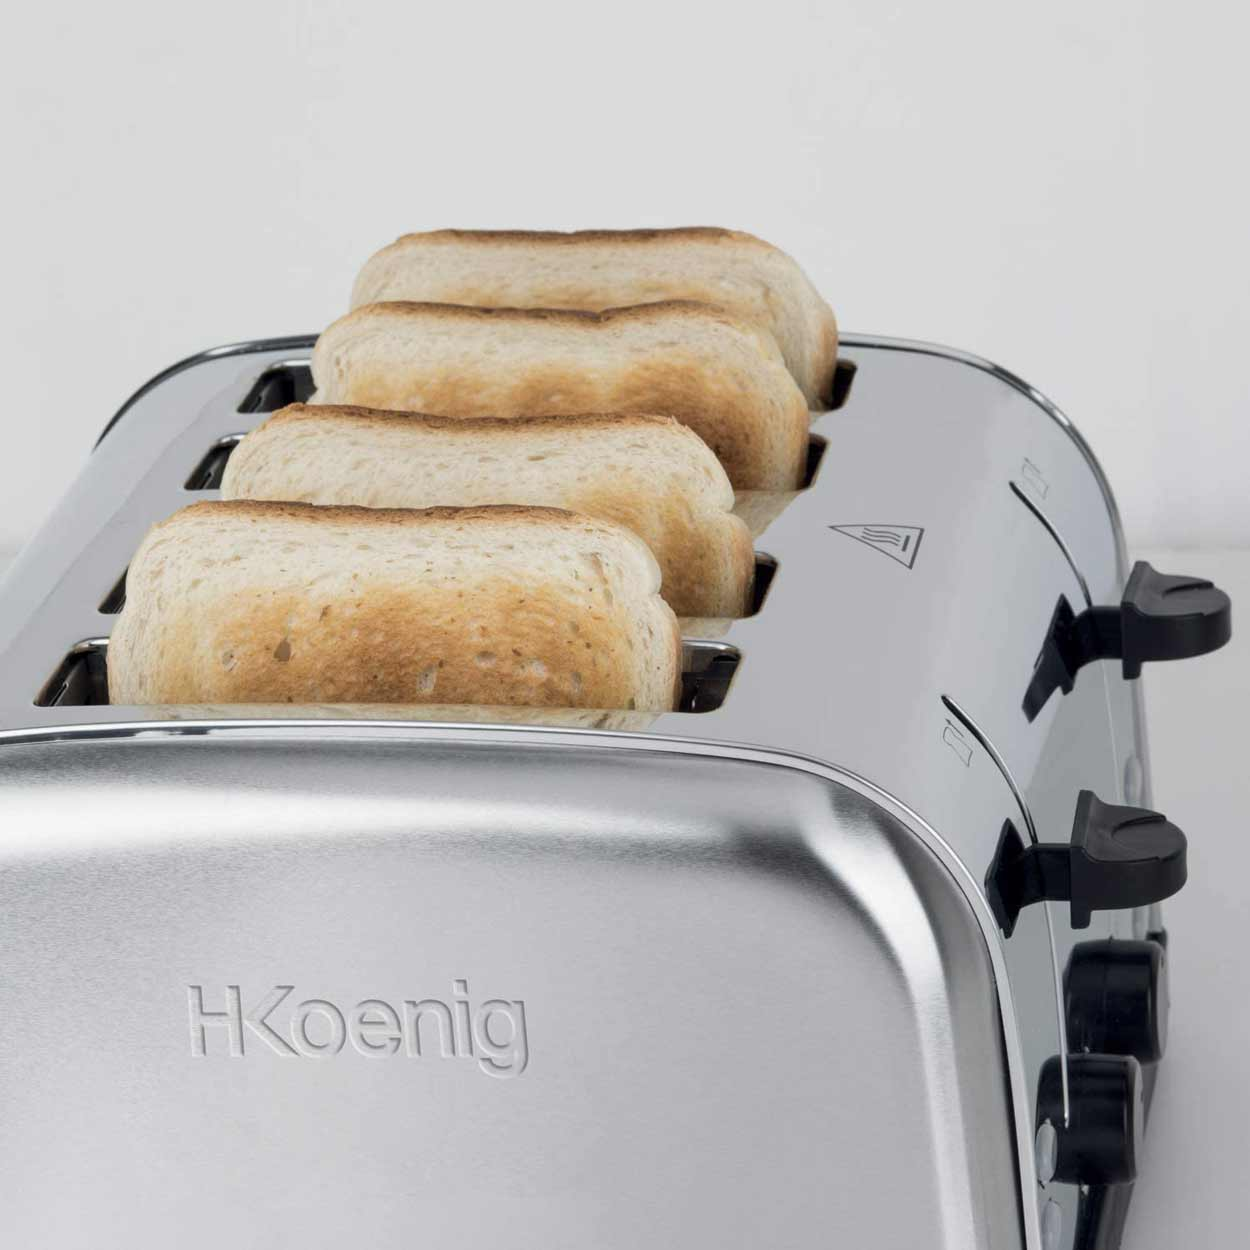 4) TOS14 Toaster (1500 H.KOENIG Schlitze: Silber Watt,